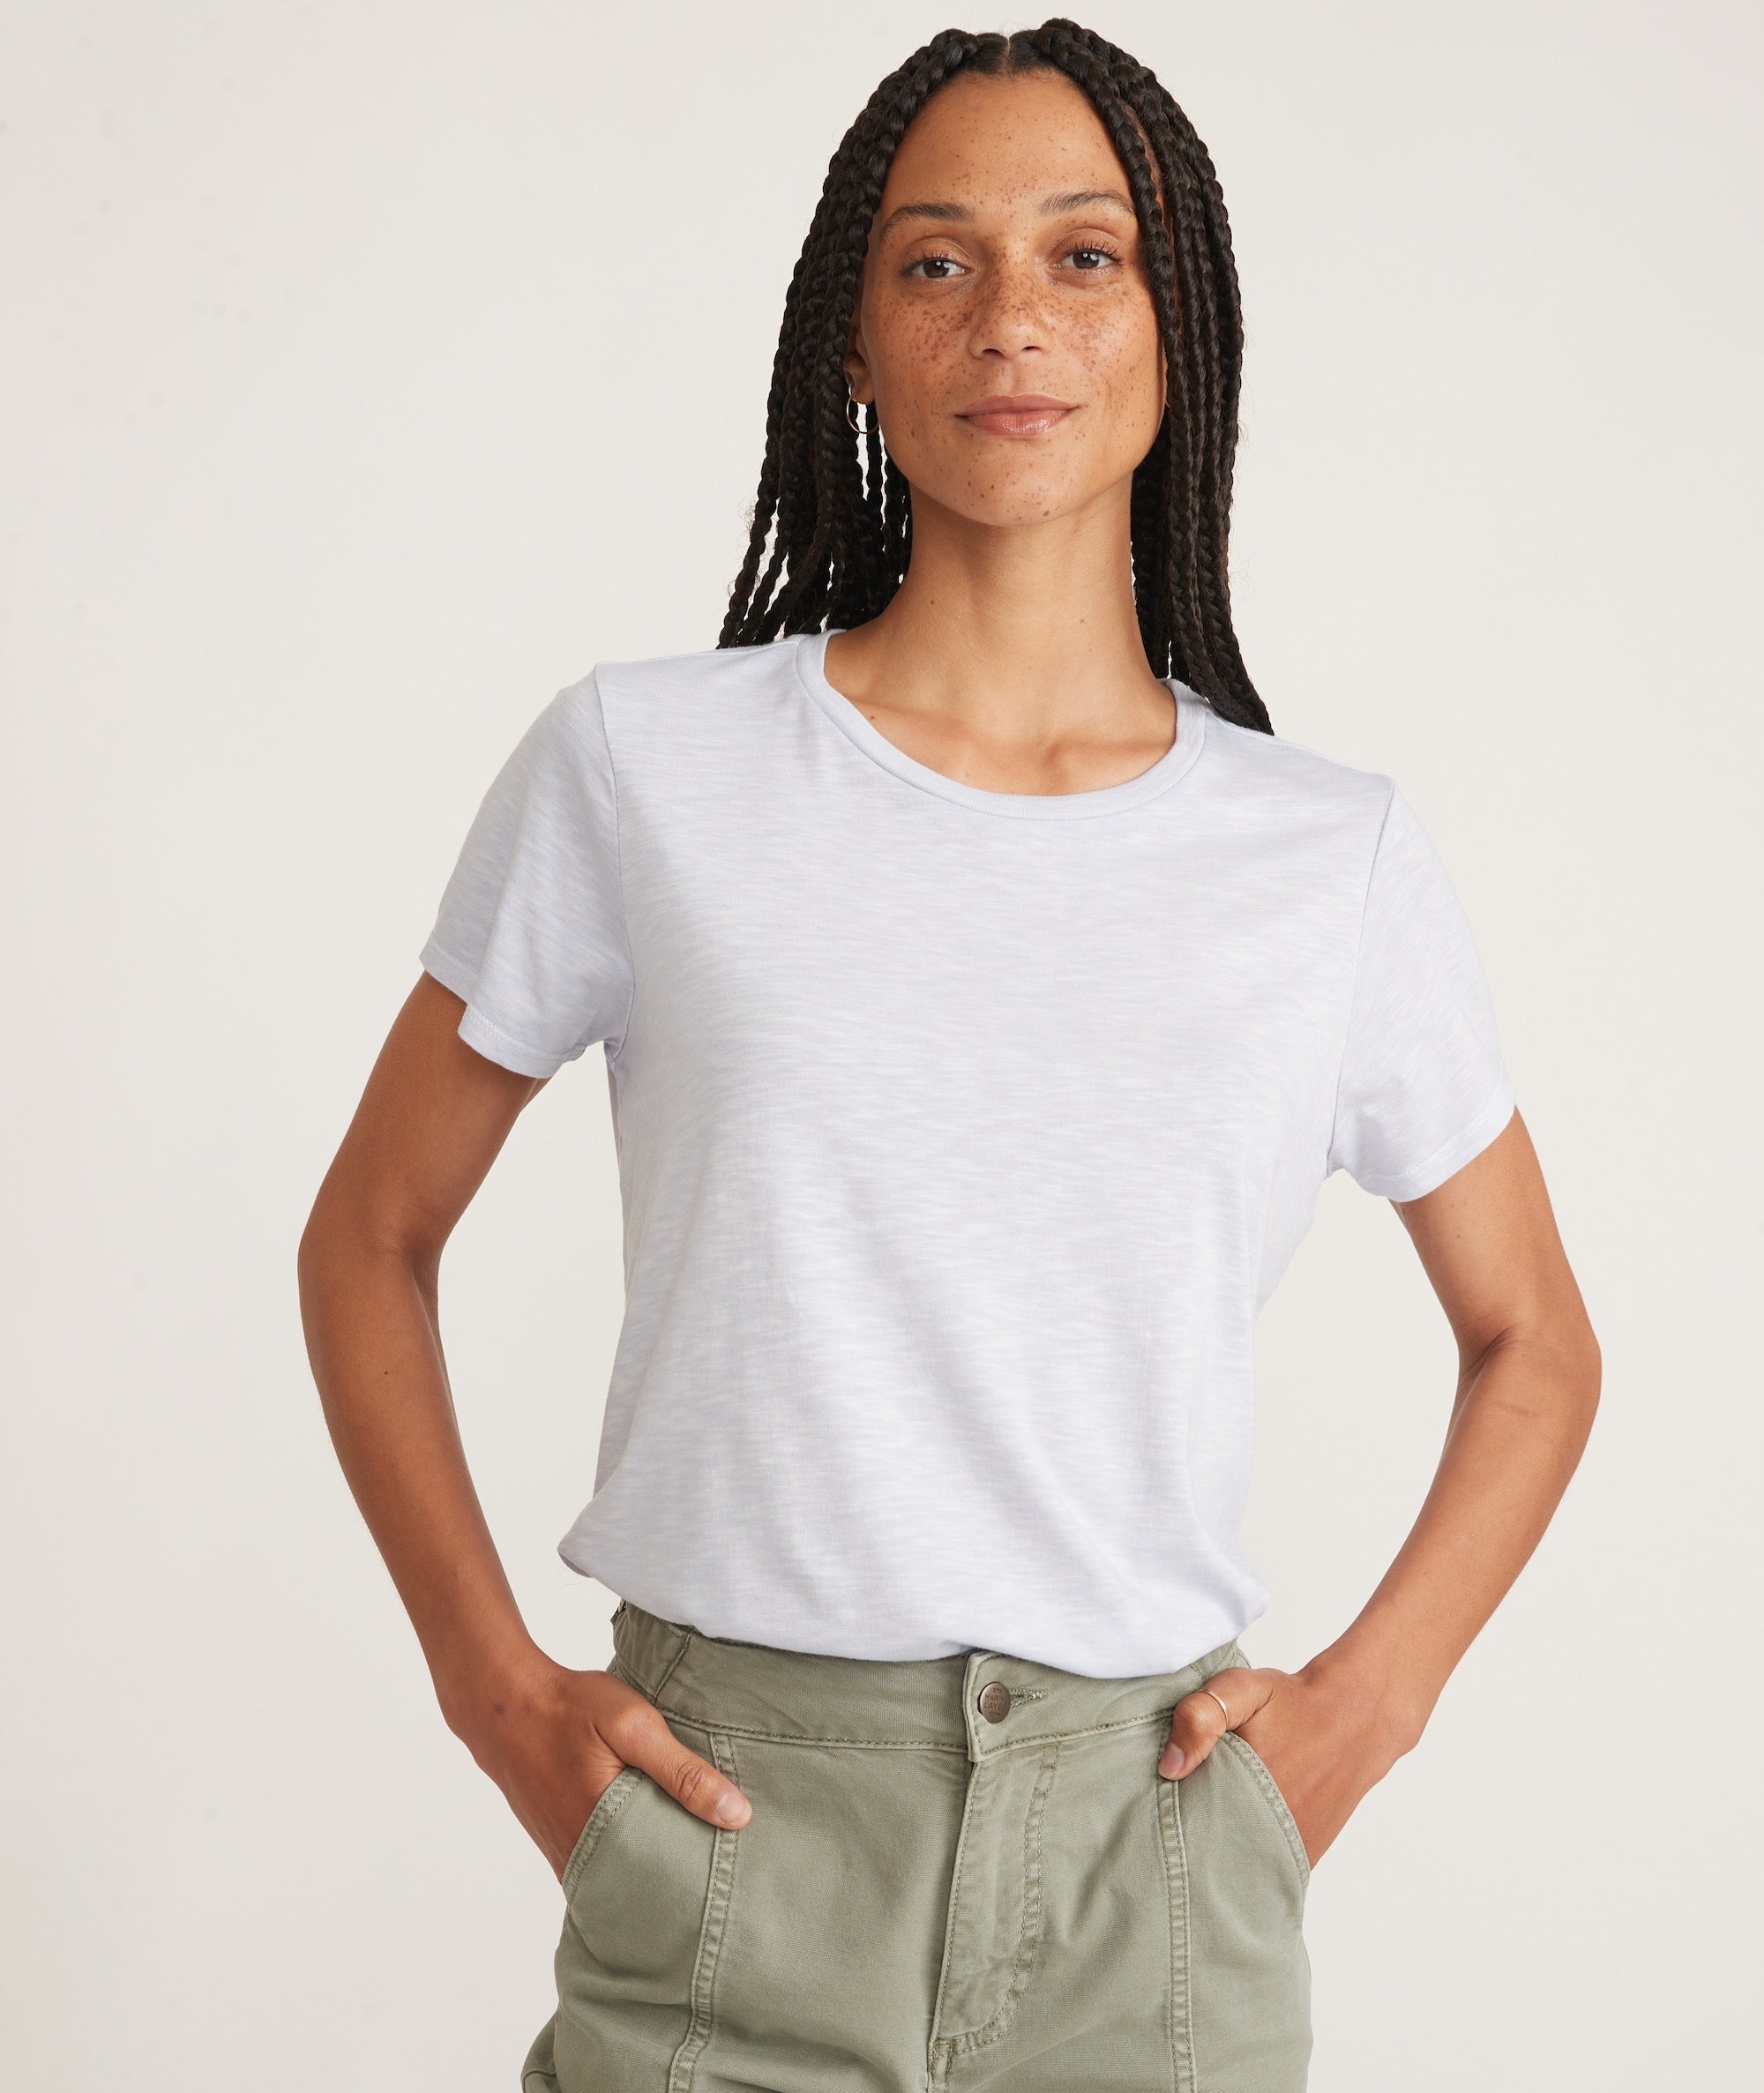 Buy Women's Raglan T-Shirt & Get 20% Off